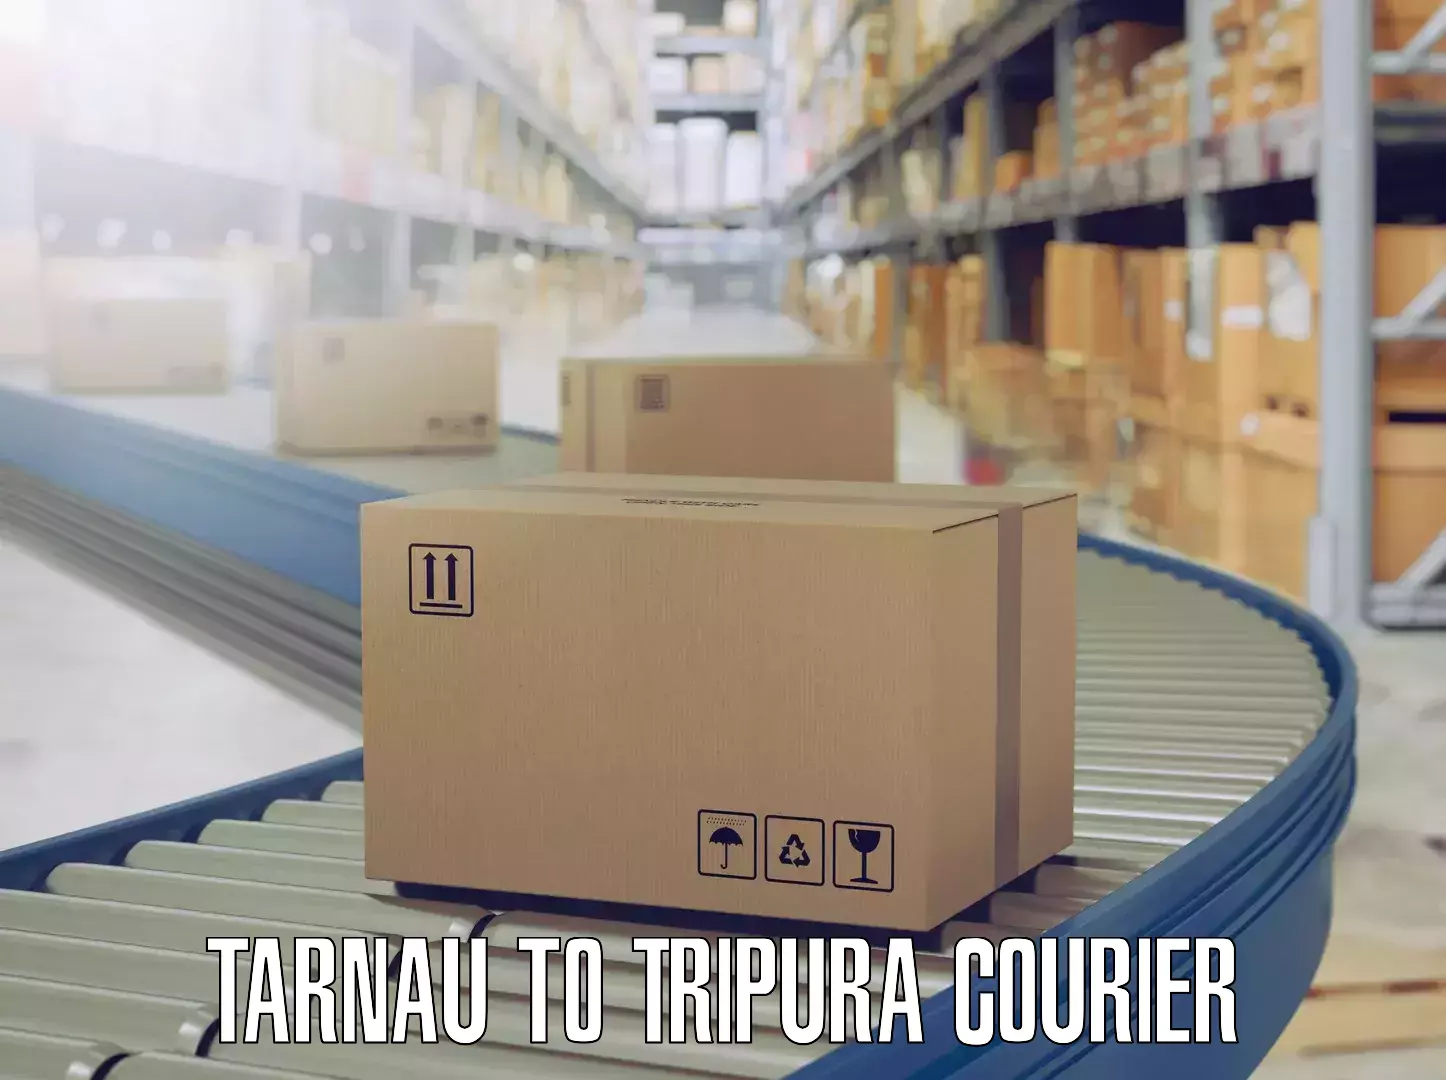 Flexible moving solutions Tarnau to North Tripura